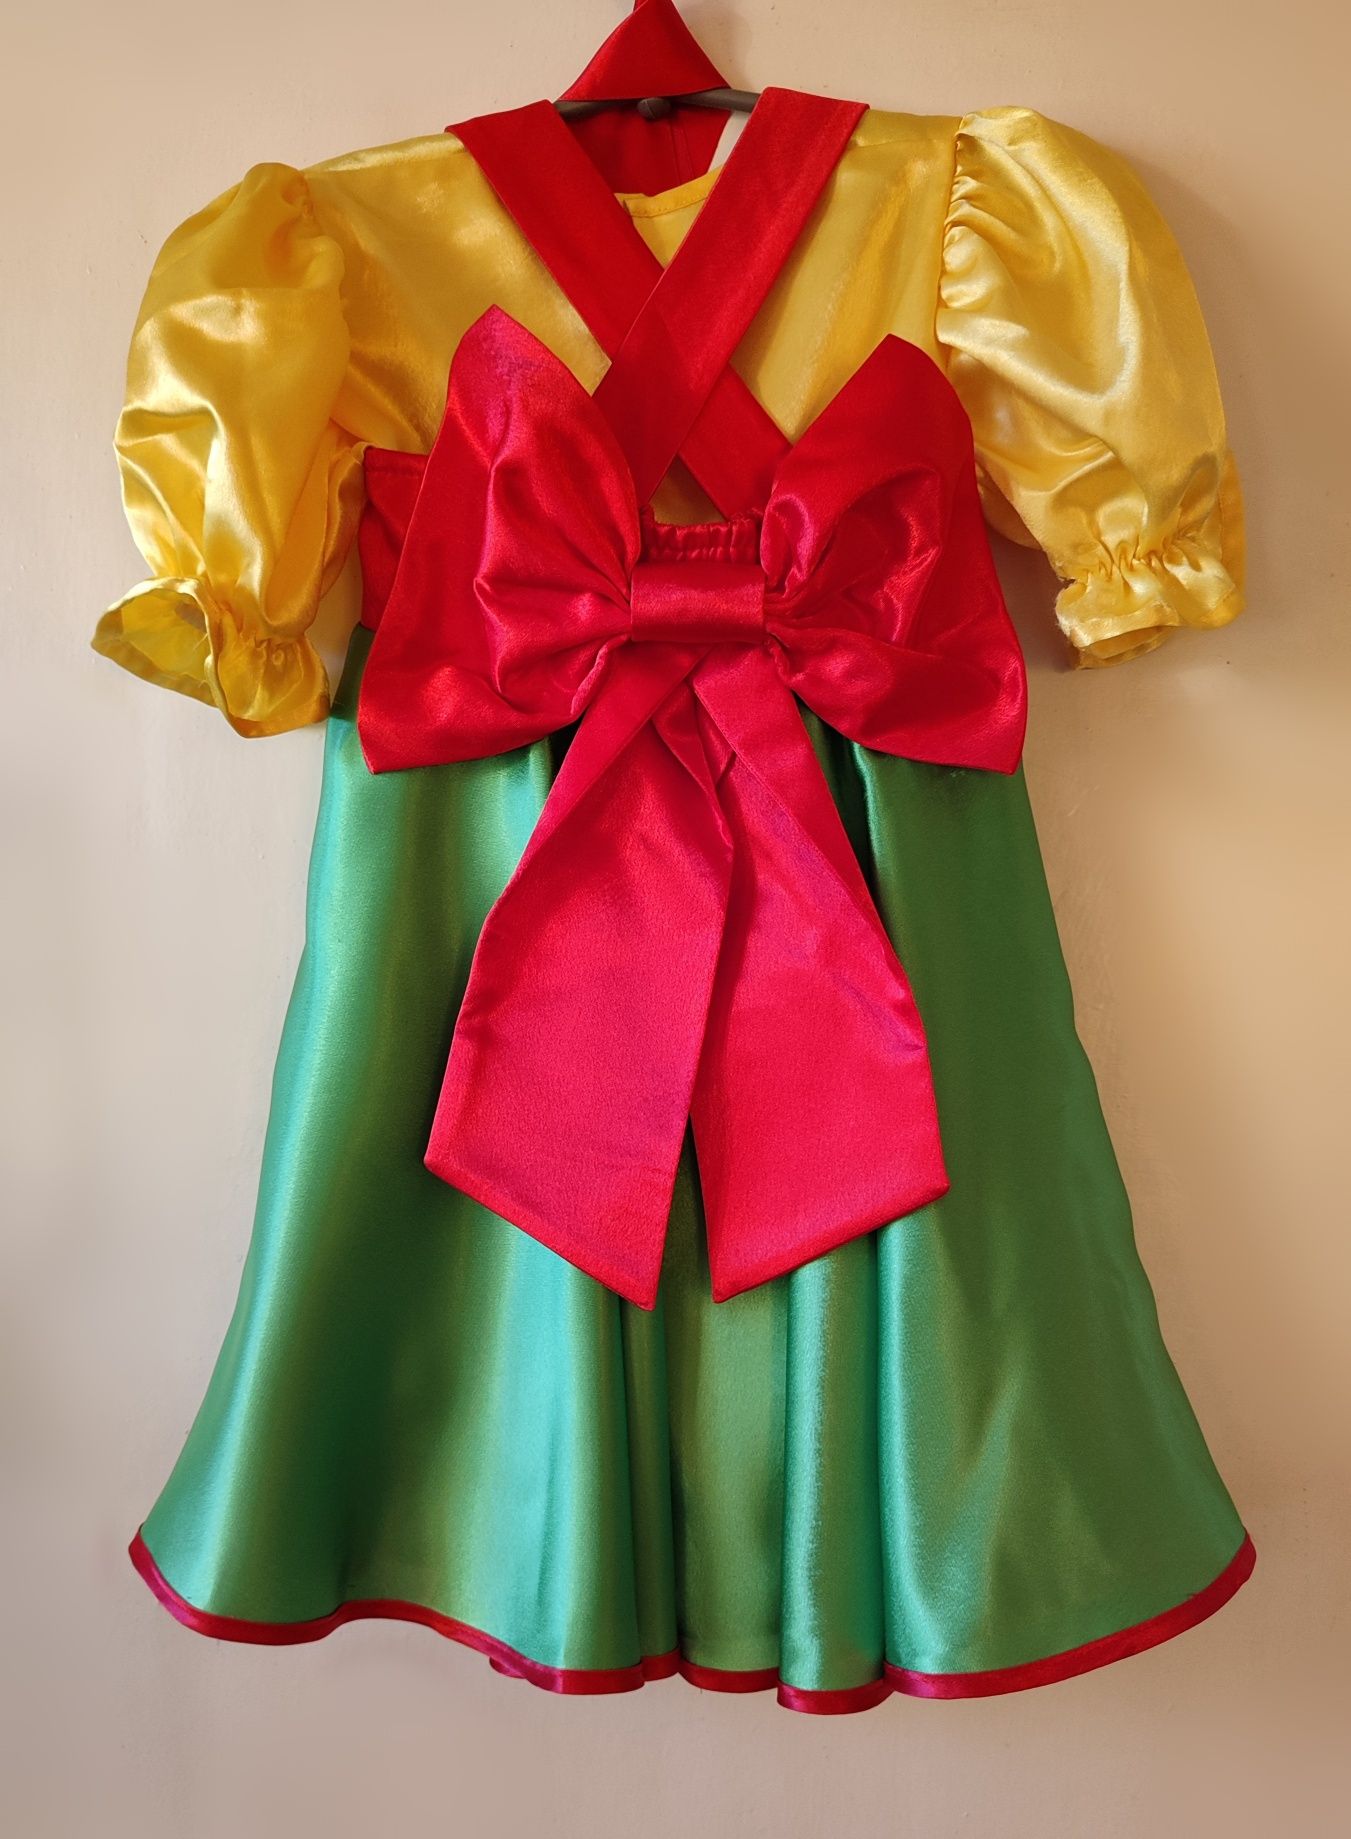 Танцювальний костюм дитячий для народних танців. Зелений сарафан